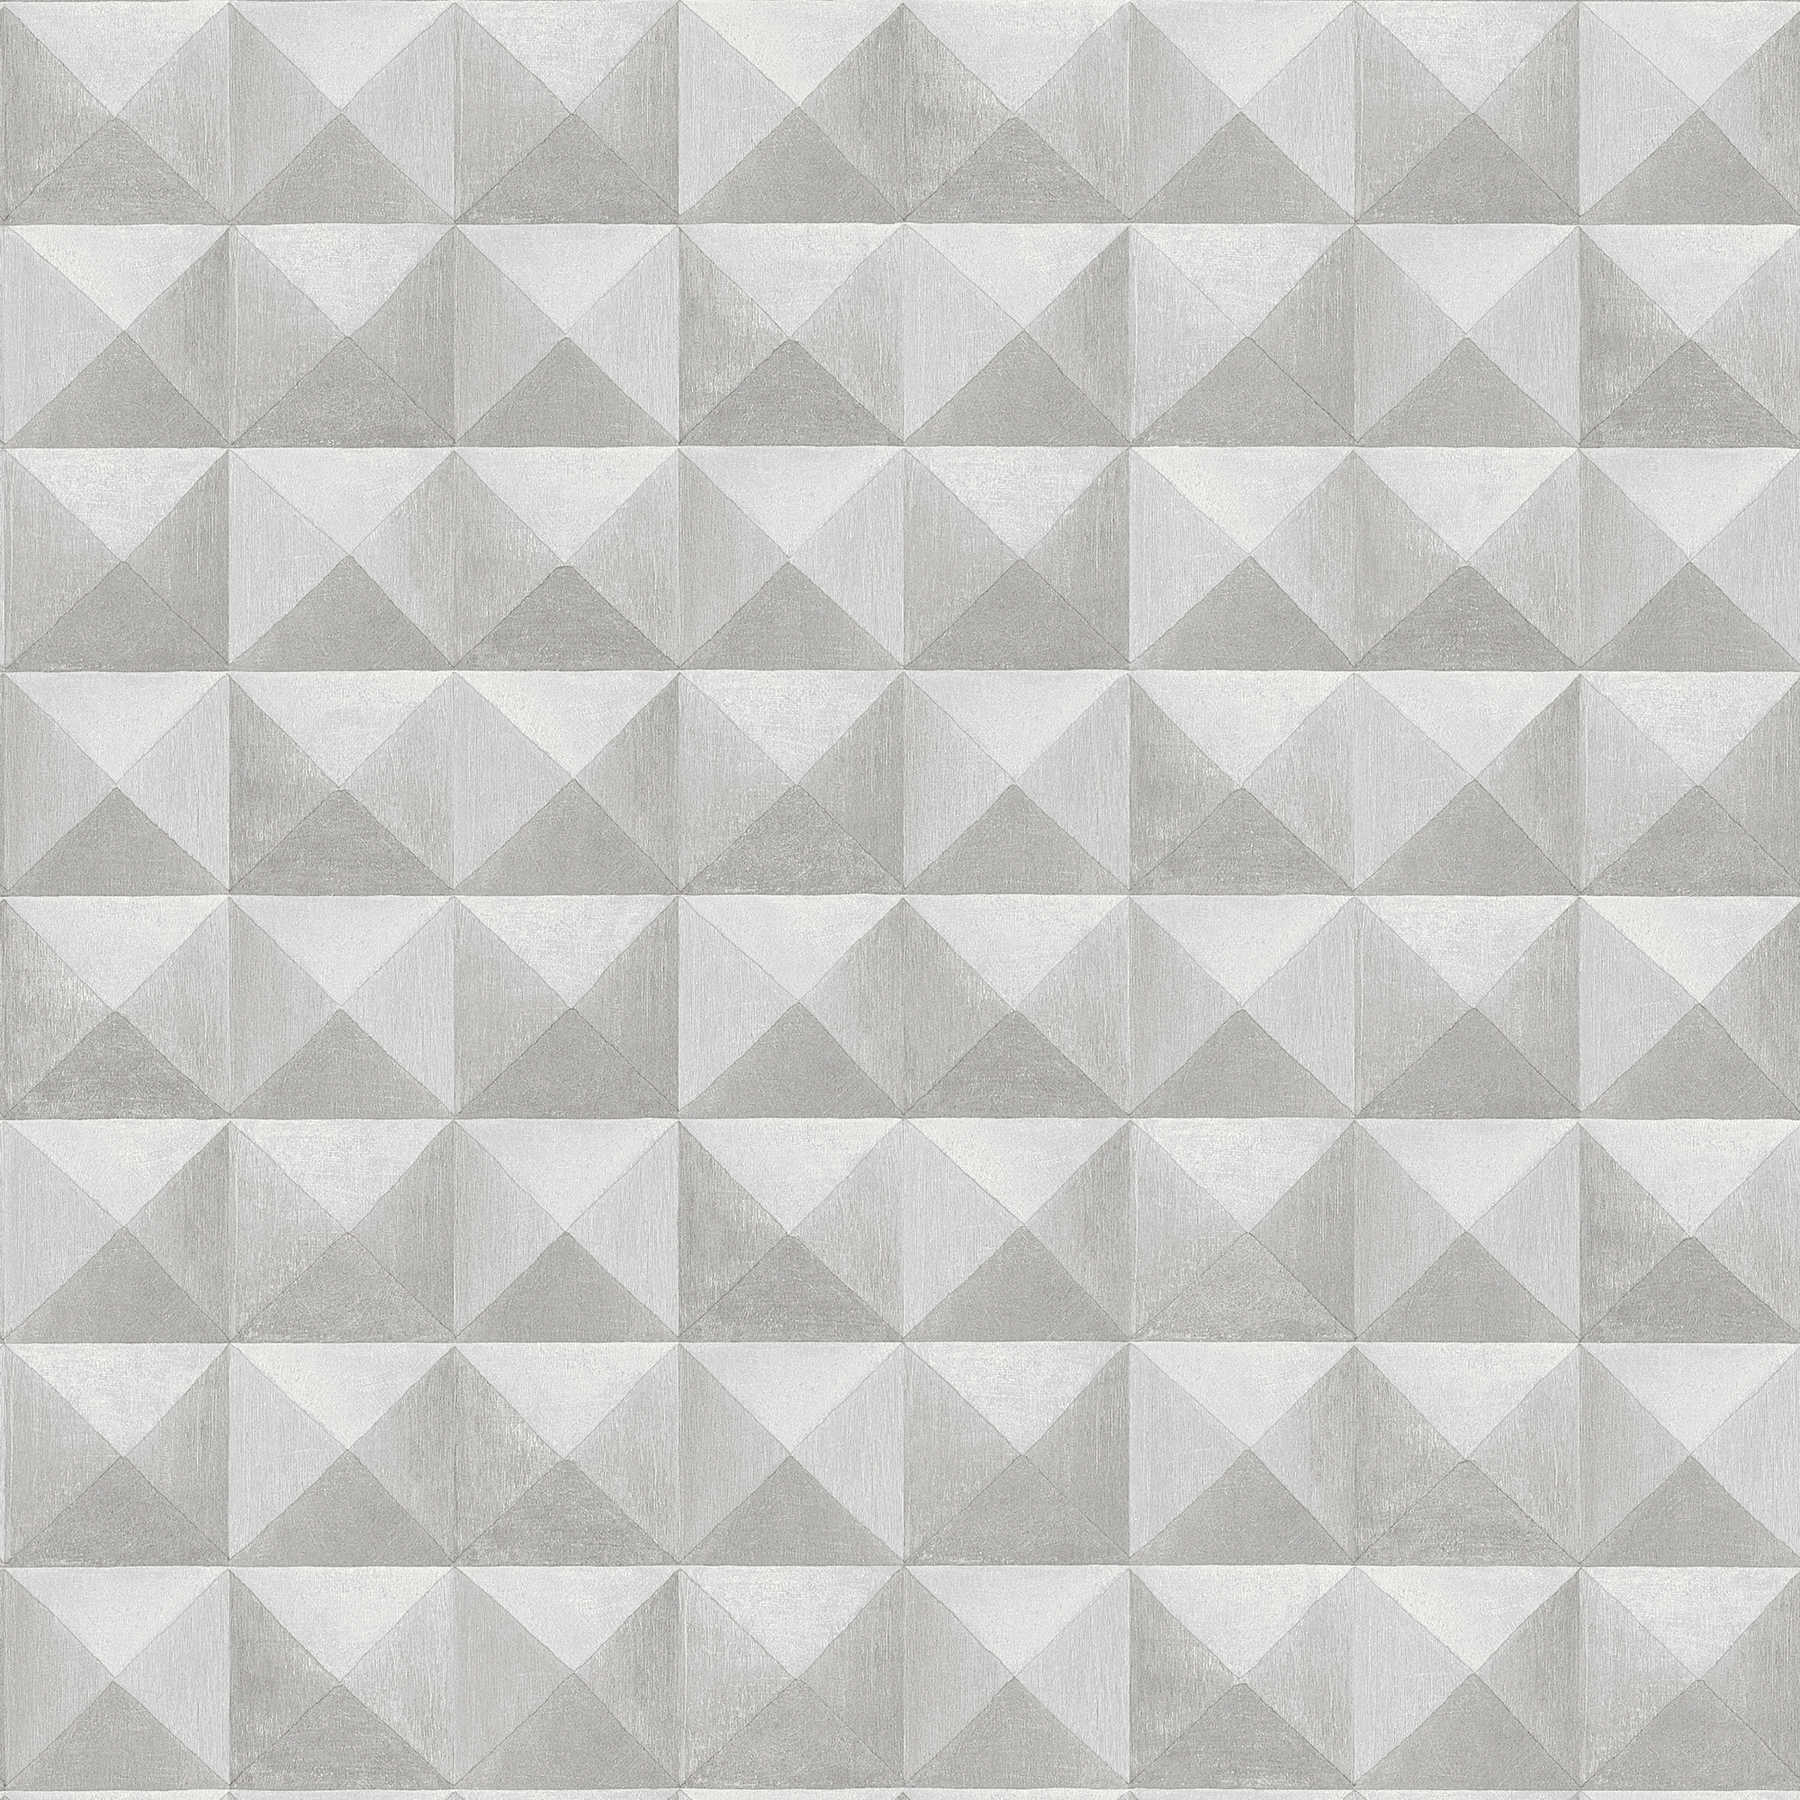         3D Vliestapete mit Pyramiden Muster & Schatteneffekt – Grau
    